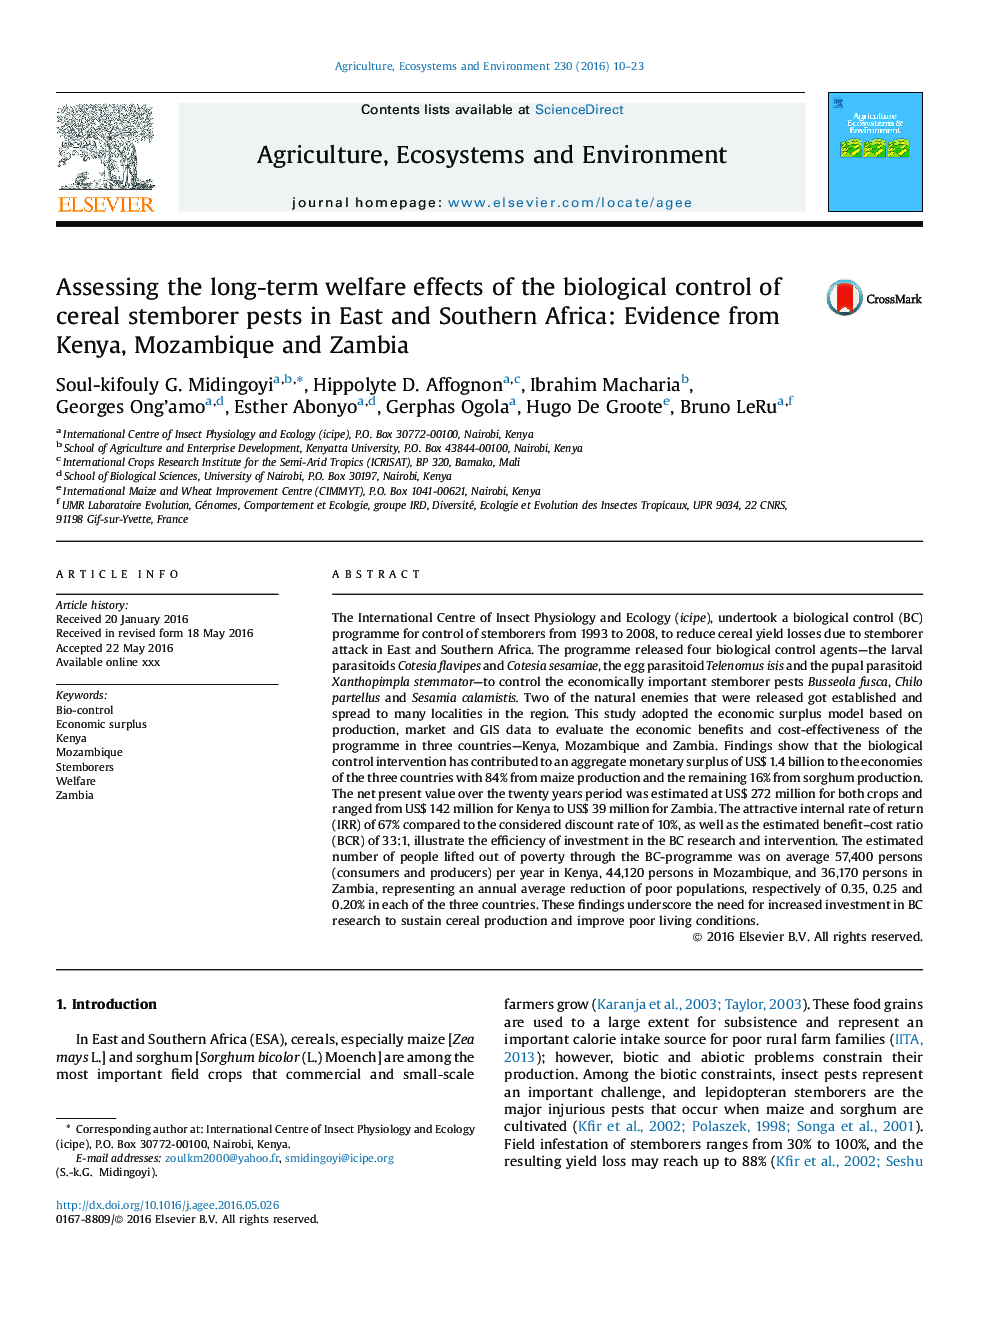 ارزیابی اثرات رفاهی درازمدت کنترل بیولوژیکی آفات ساقه غلات در شرق و جنوب آفریقا: شواهد از کنیا، موزامبیک و زامبیا 